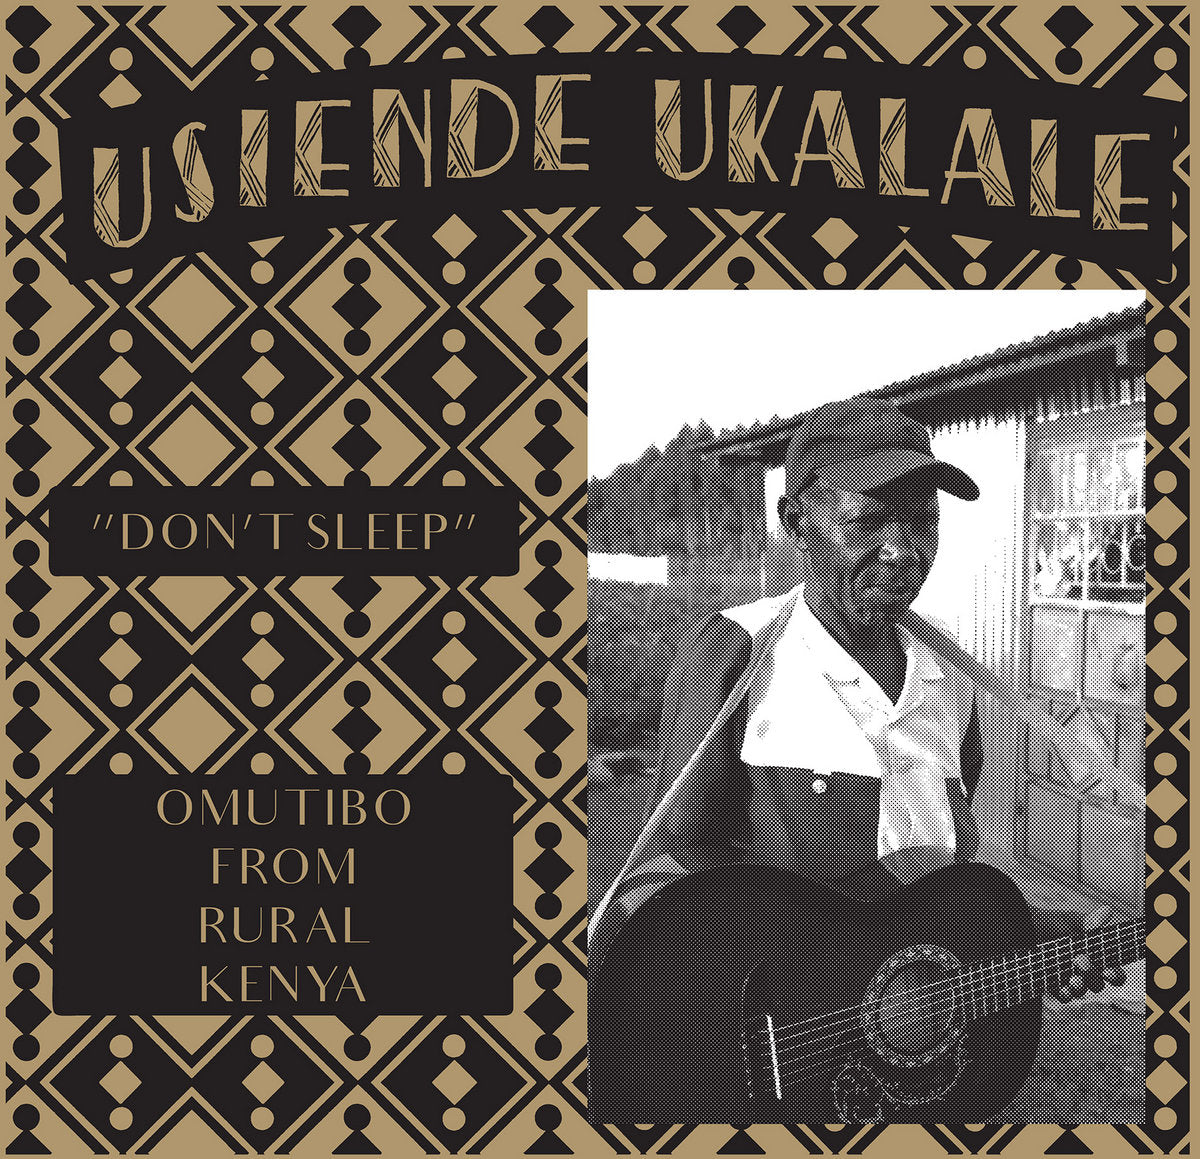 V/A - Usiende Ukalale - Don't Sleep – Omutibo from rural Kenya - LP